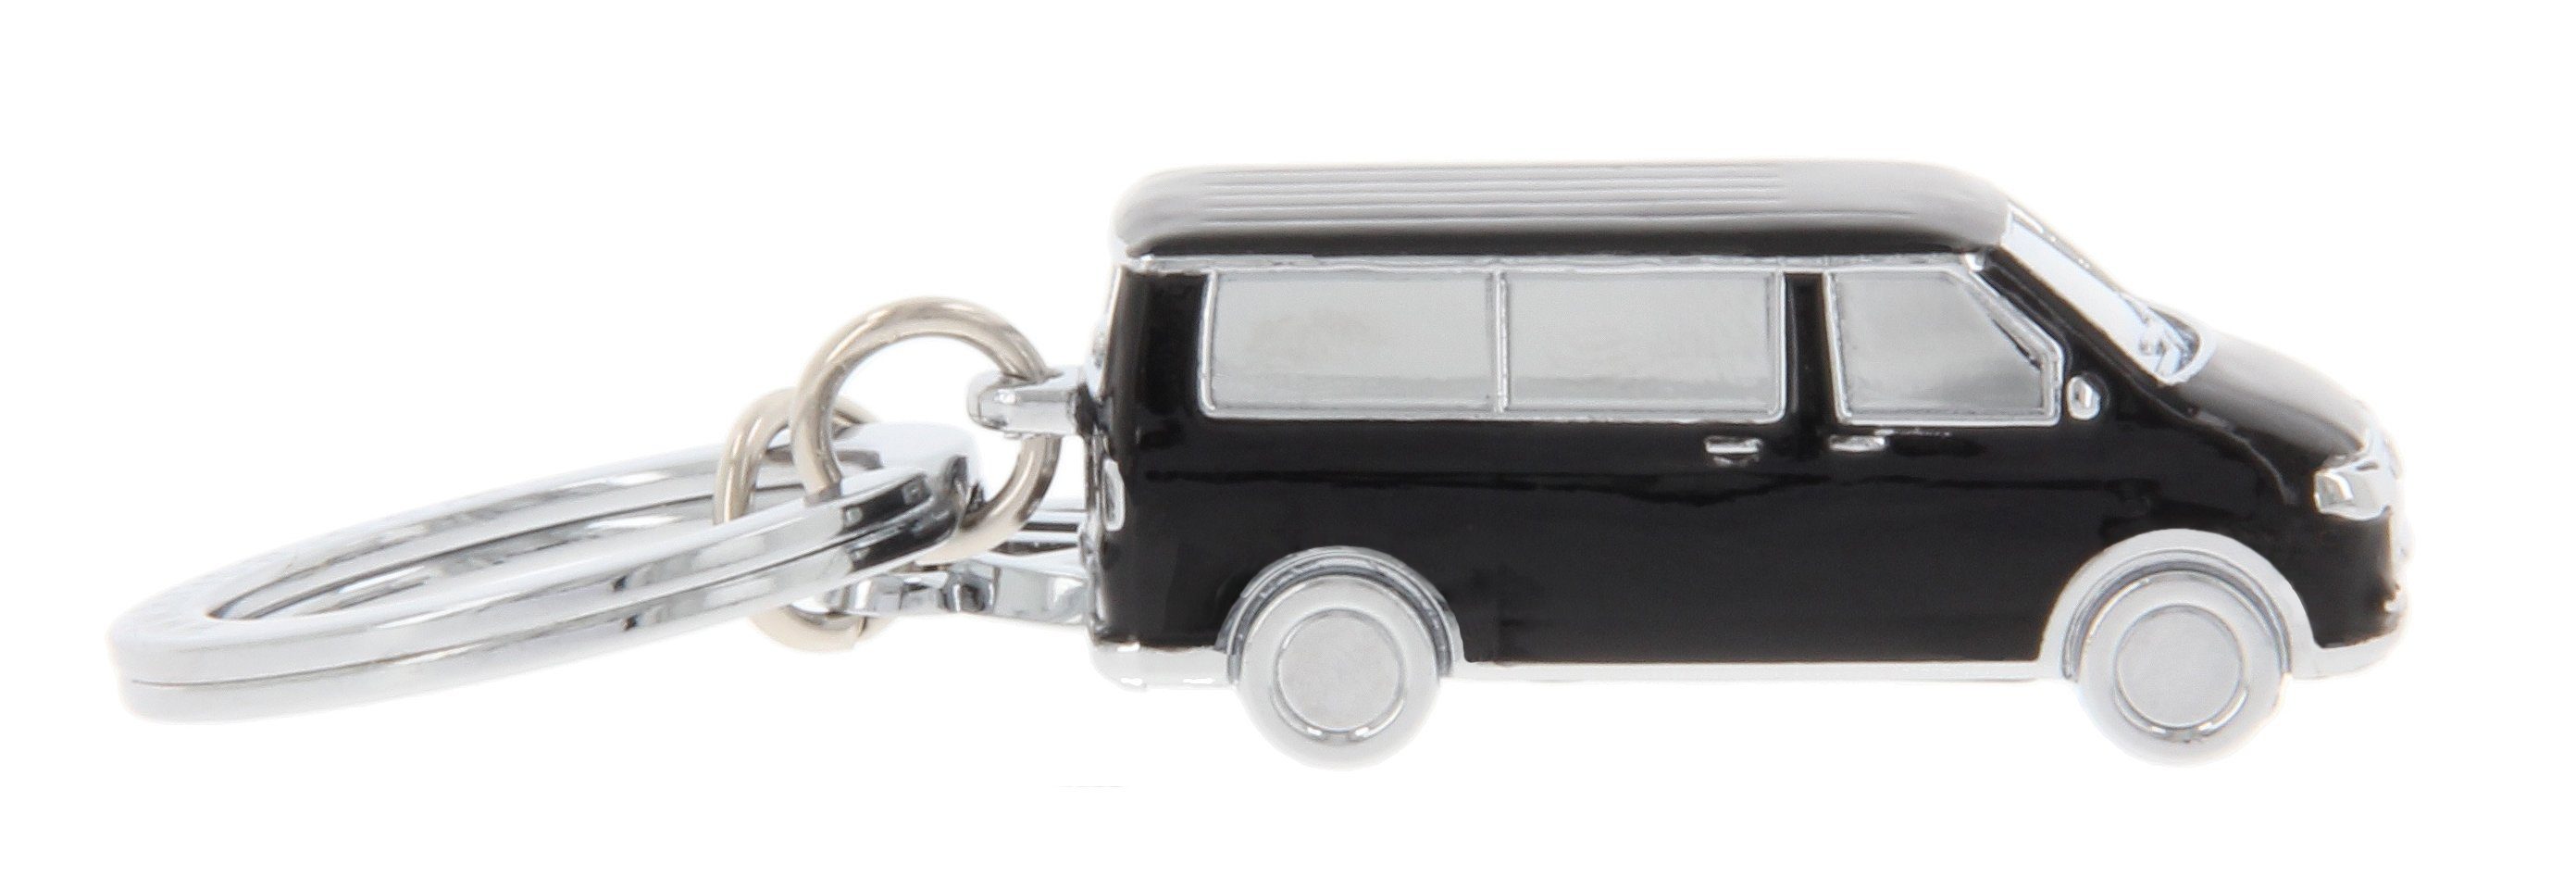 BRISA VW Collection - Volkswagen Schlüssel-Überzug-Kappen zur  Identifizierung von Schlüsseln im T1 Bulli Bus Design (3ER Set)